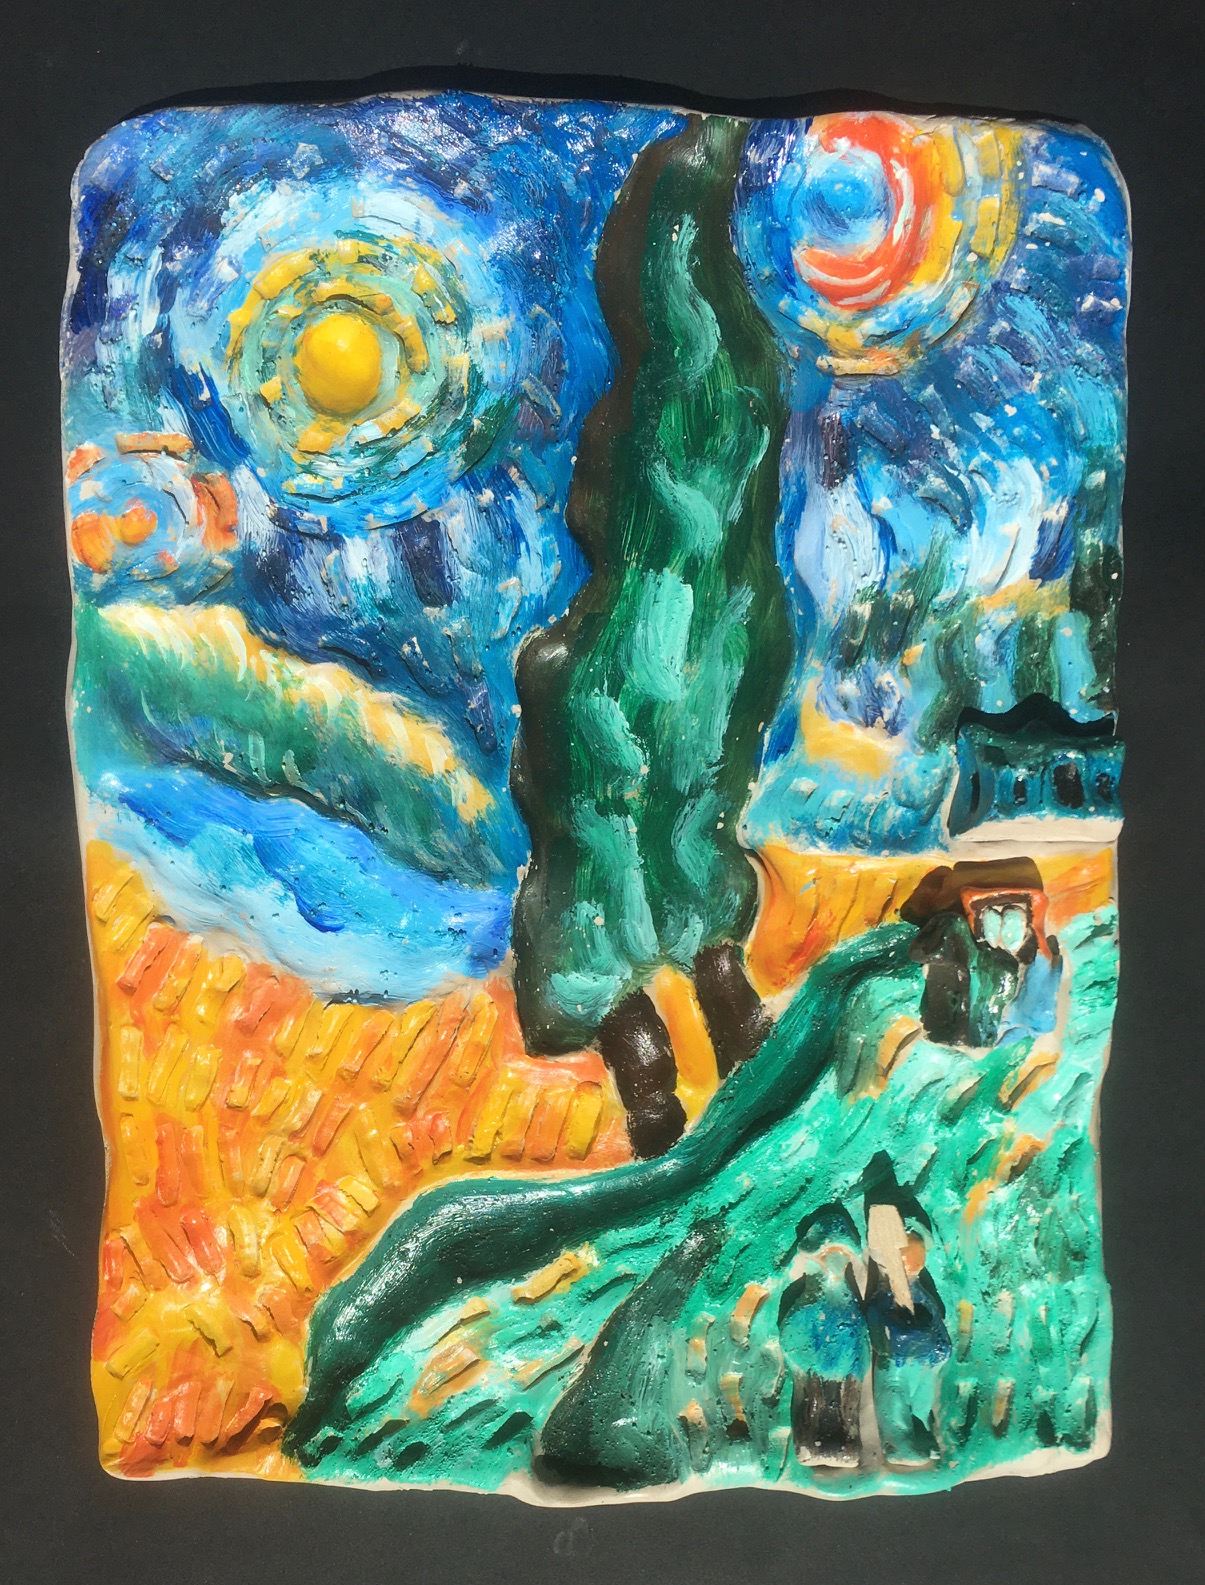 Vincent Van Gogh Route avec un cyprès et un ciel étoilé Peinture tactile en relief : bas-relief en argile modelé et réhaussé de peinture acrylique texturée à l’aide de médiums, personnages, maisonnette et charrette modelés en argile et peints comme des santons de Provence. Année réalisation de l’interprétation tactile : 2019.